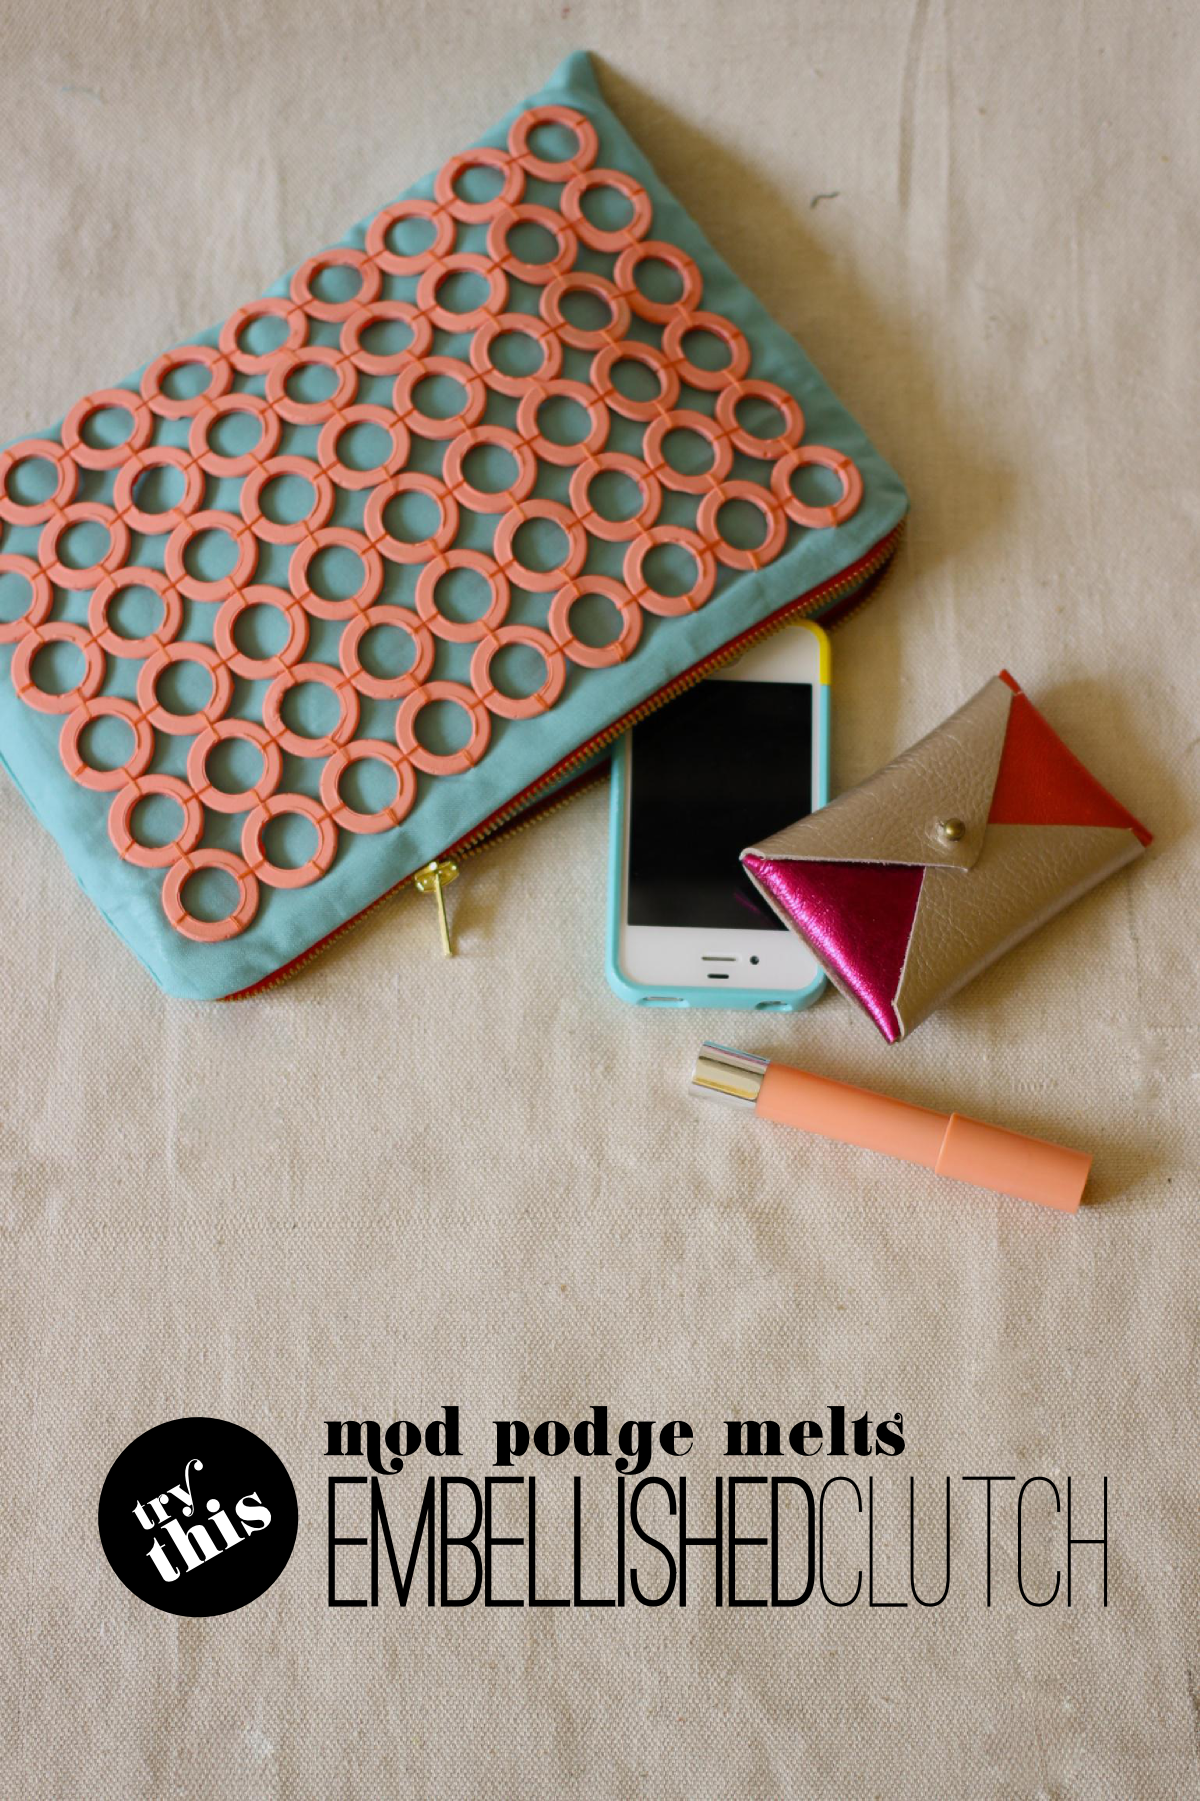 Fabric Paper Glue | DIY Mod Podge Melts Embellished Clutch